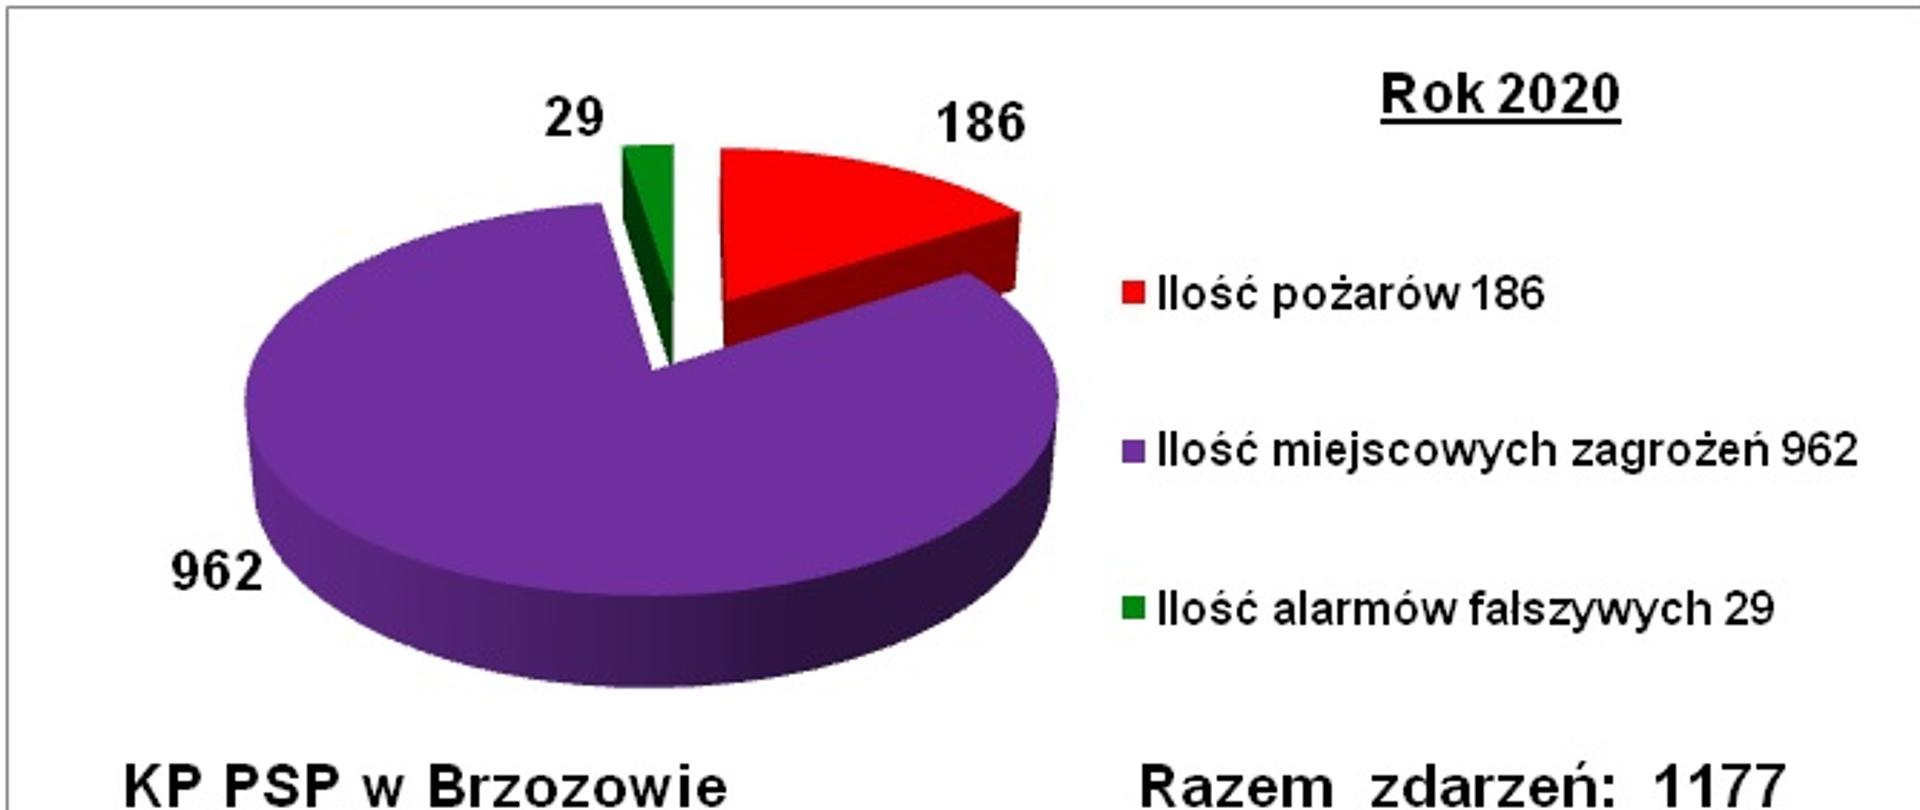 Obraz przedstawia na białym tle kolorowy wykres krążkowy ze statystyką zdarzeń w 2020 roku odnotowanych w Komendzie Powiatowej PSP w Brzozowie w 2020 roku. Po lewej stronie kolorowe cząstki wykresu krążkowego tworzące z wycinków pełne koło. Największy wycinek koła fioletowy z opisem 962 miejscowe zagrożenia, mniejszy czerwony wycinek z opisem 186 pożarów i mały wycinek zielony z opisem 29 alarmów fałszywych. U góry po prawej czarny podkreślony napis rok 2020. Poniżej legenda z kolorami do wycinków koła. U dołu po lewej czarny napis KP PSP w Brzozowie. Po prawej u dołu czarny napis: razem zdarzeń 1177.